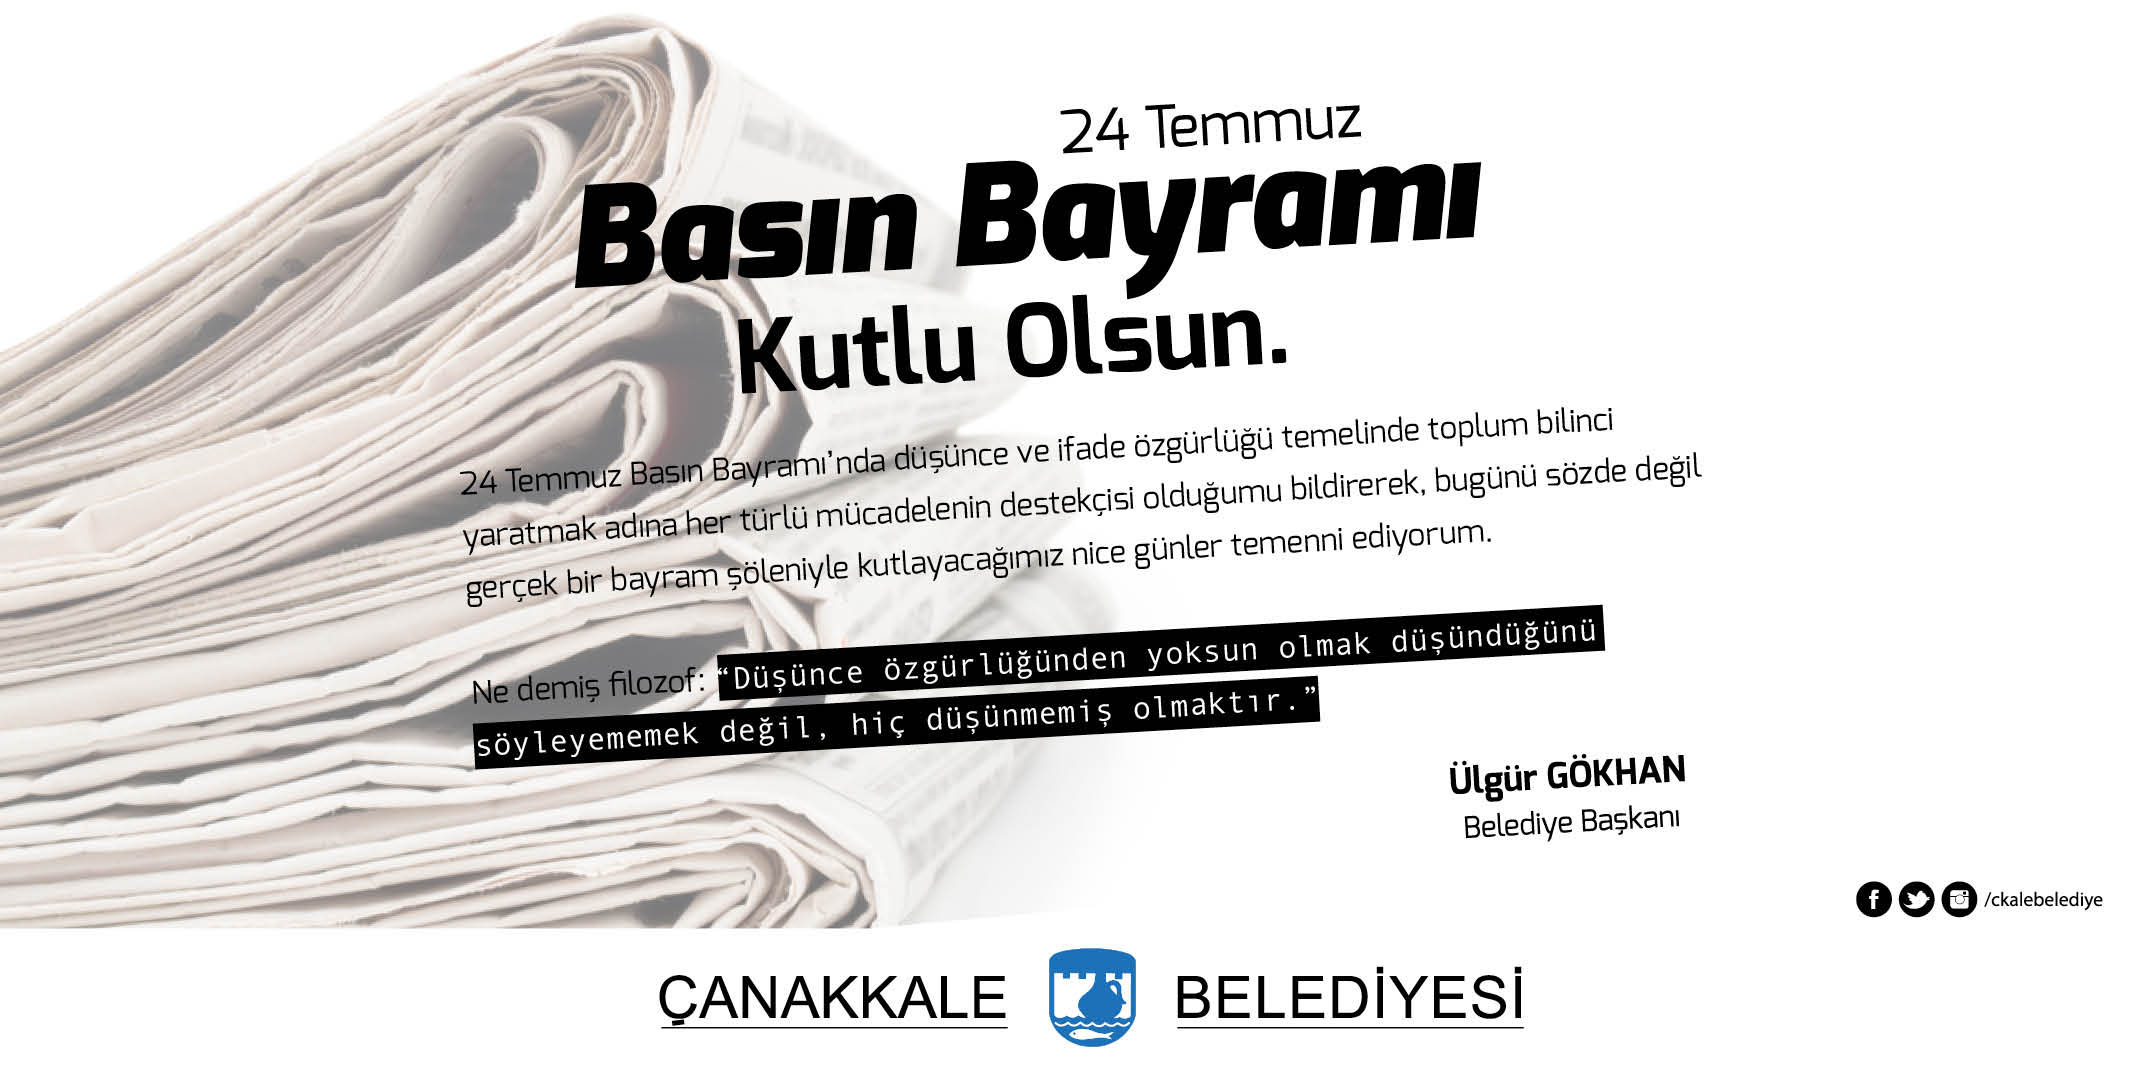 Belediye Başkanı Sayın Ülgür Gökhan'ın Türk Basınından Sansürün Kaldırılması Ve Basın Bayramı Mesajı